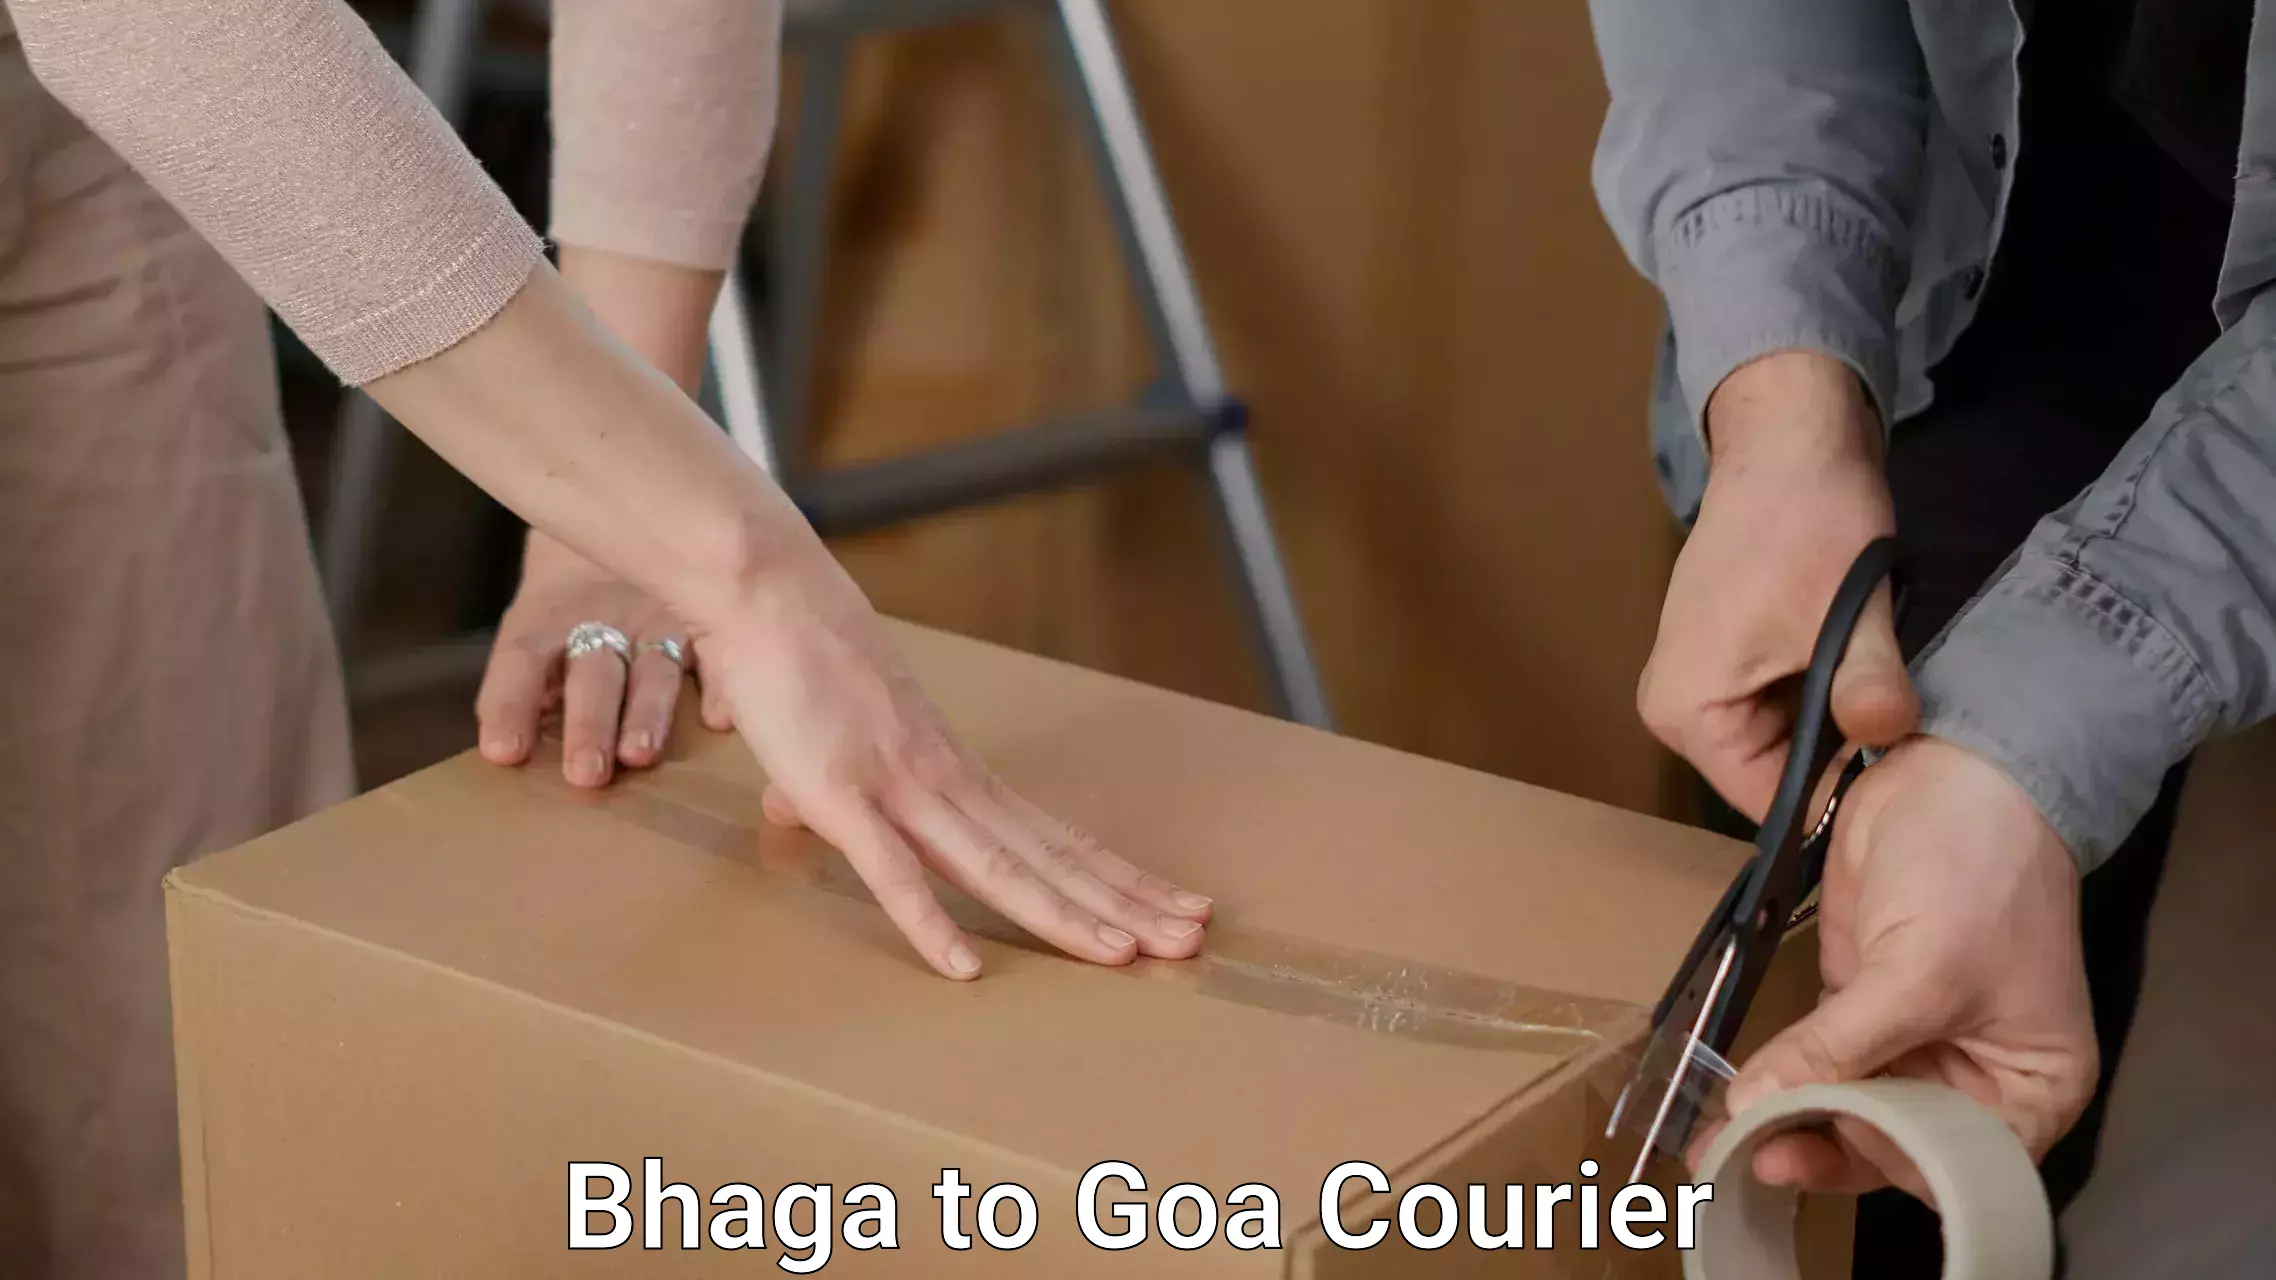 Furniture transport professionals Bhaga to Goa